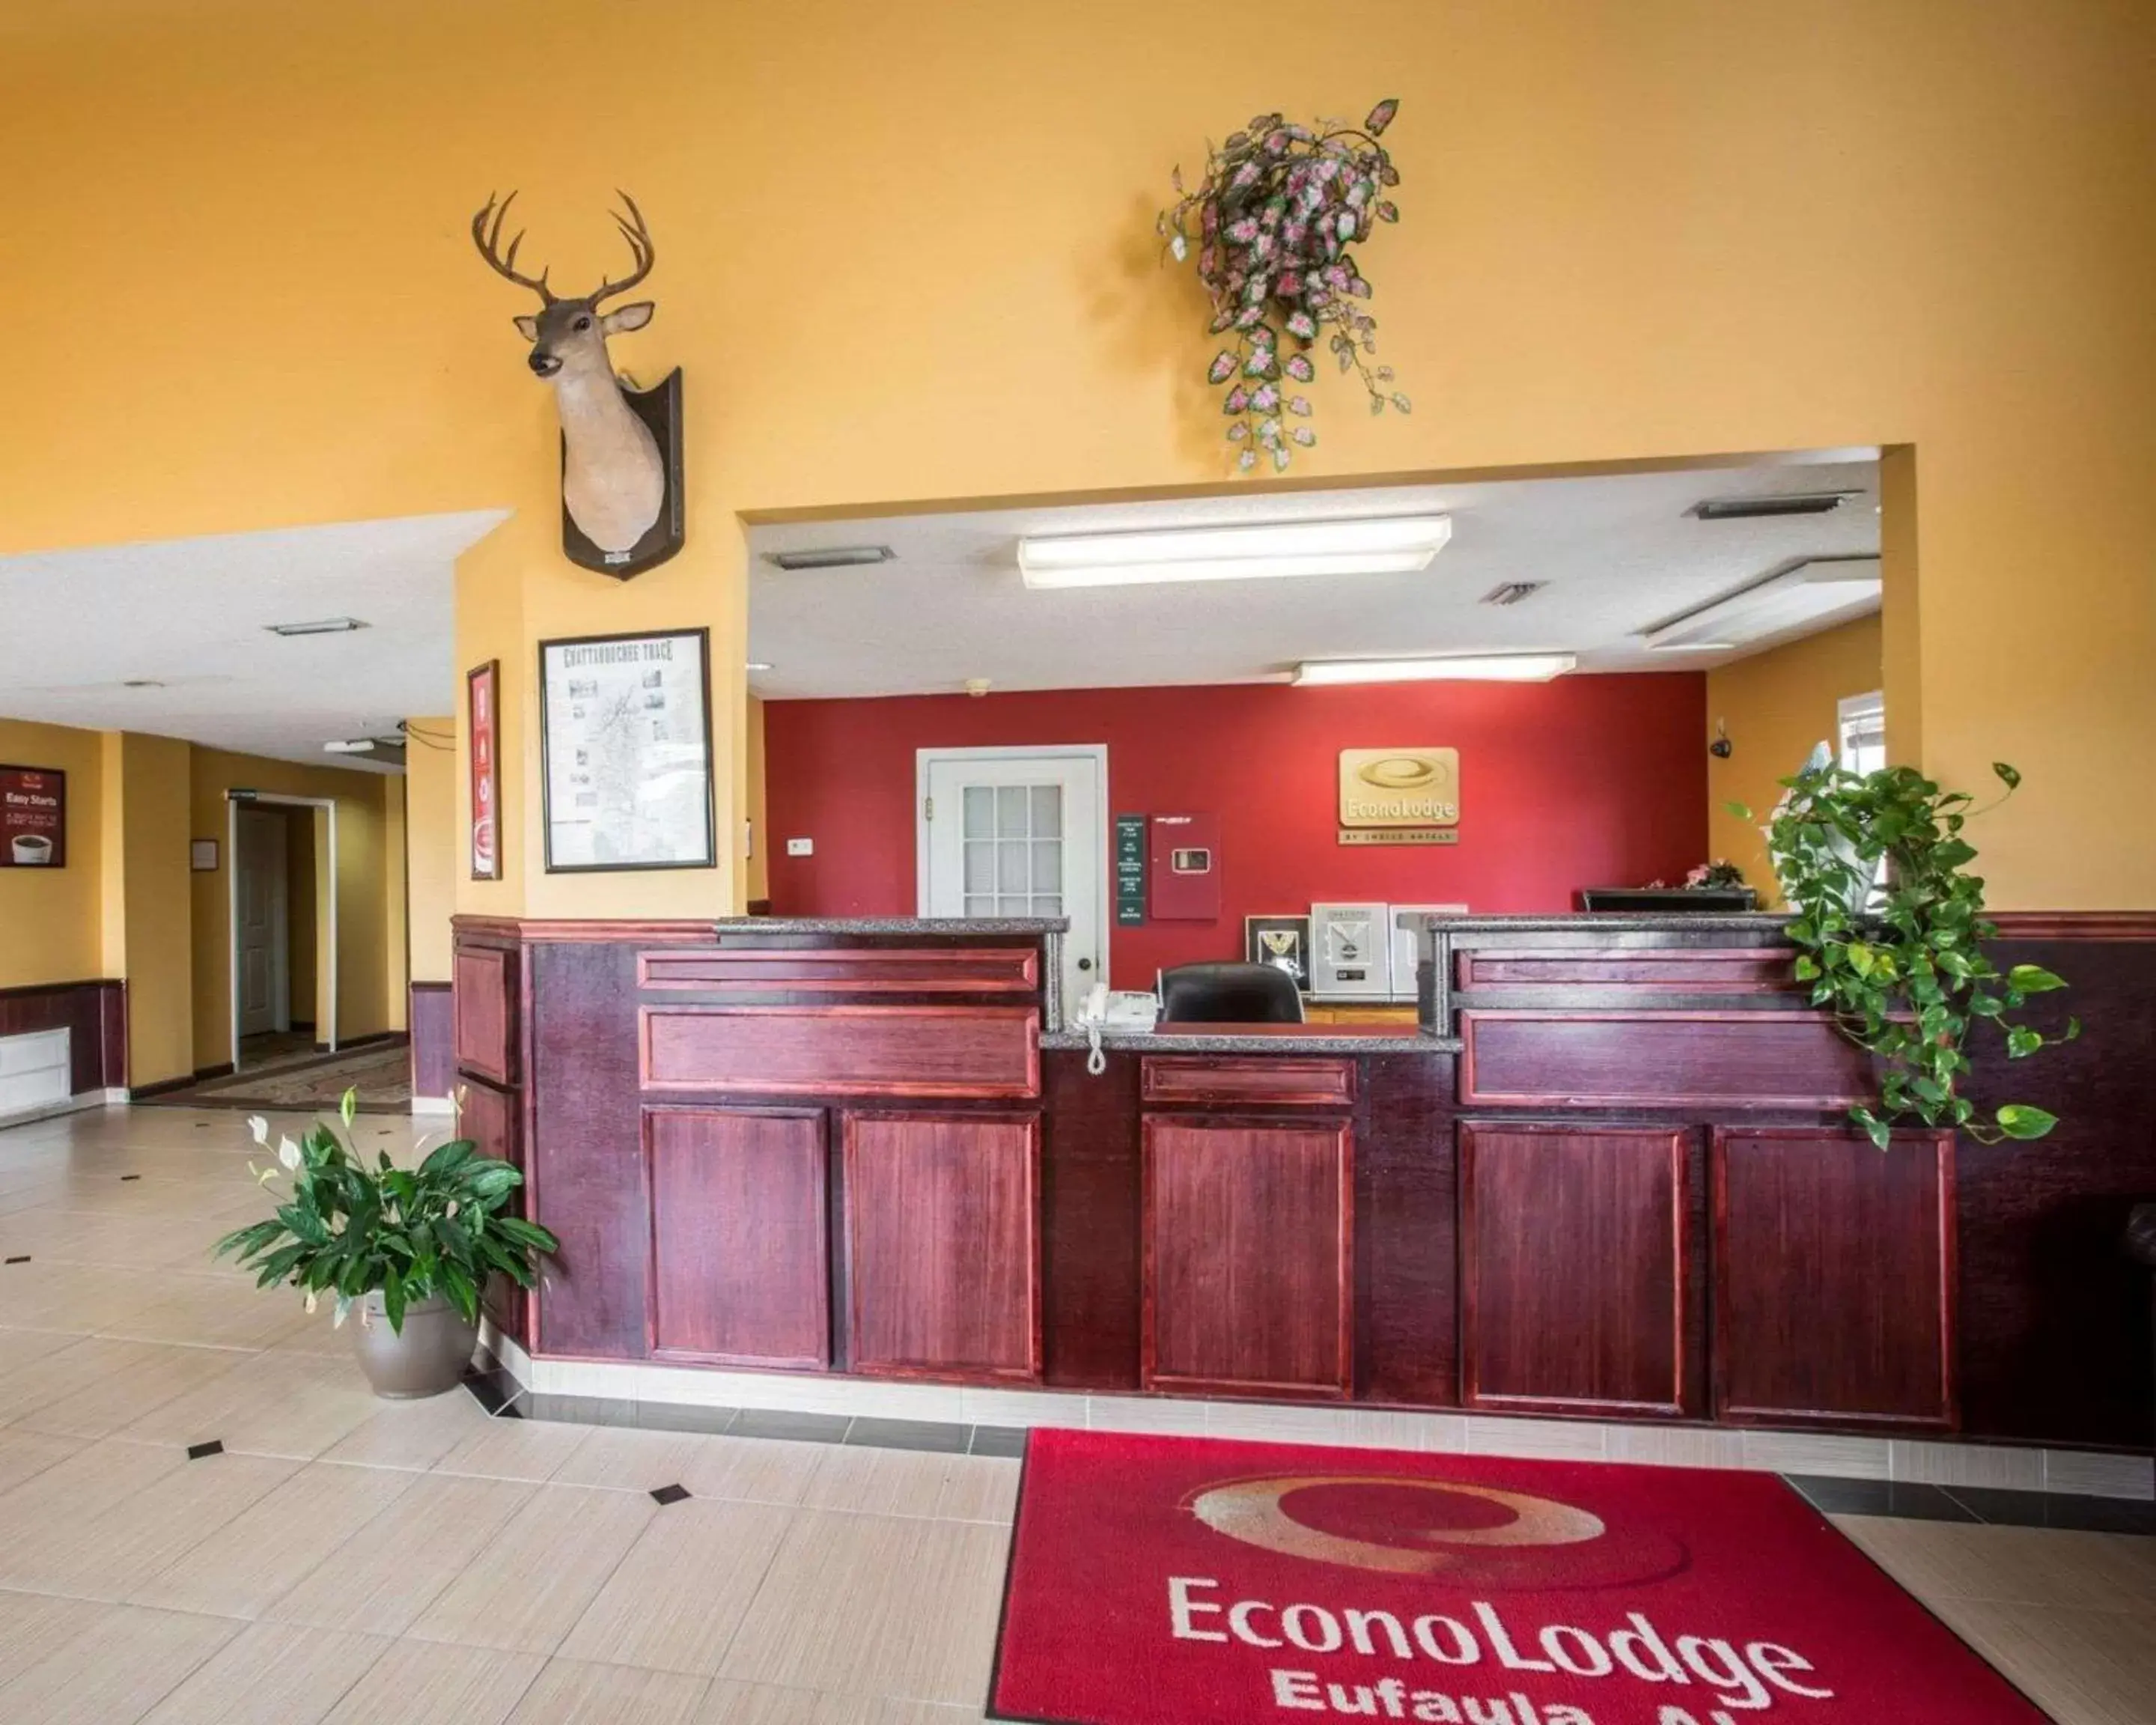 Lobby or reception, Lobby/Reception in Econo Lodge Eufaula